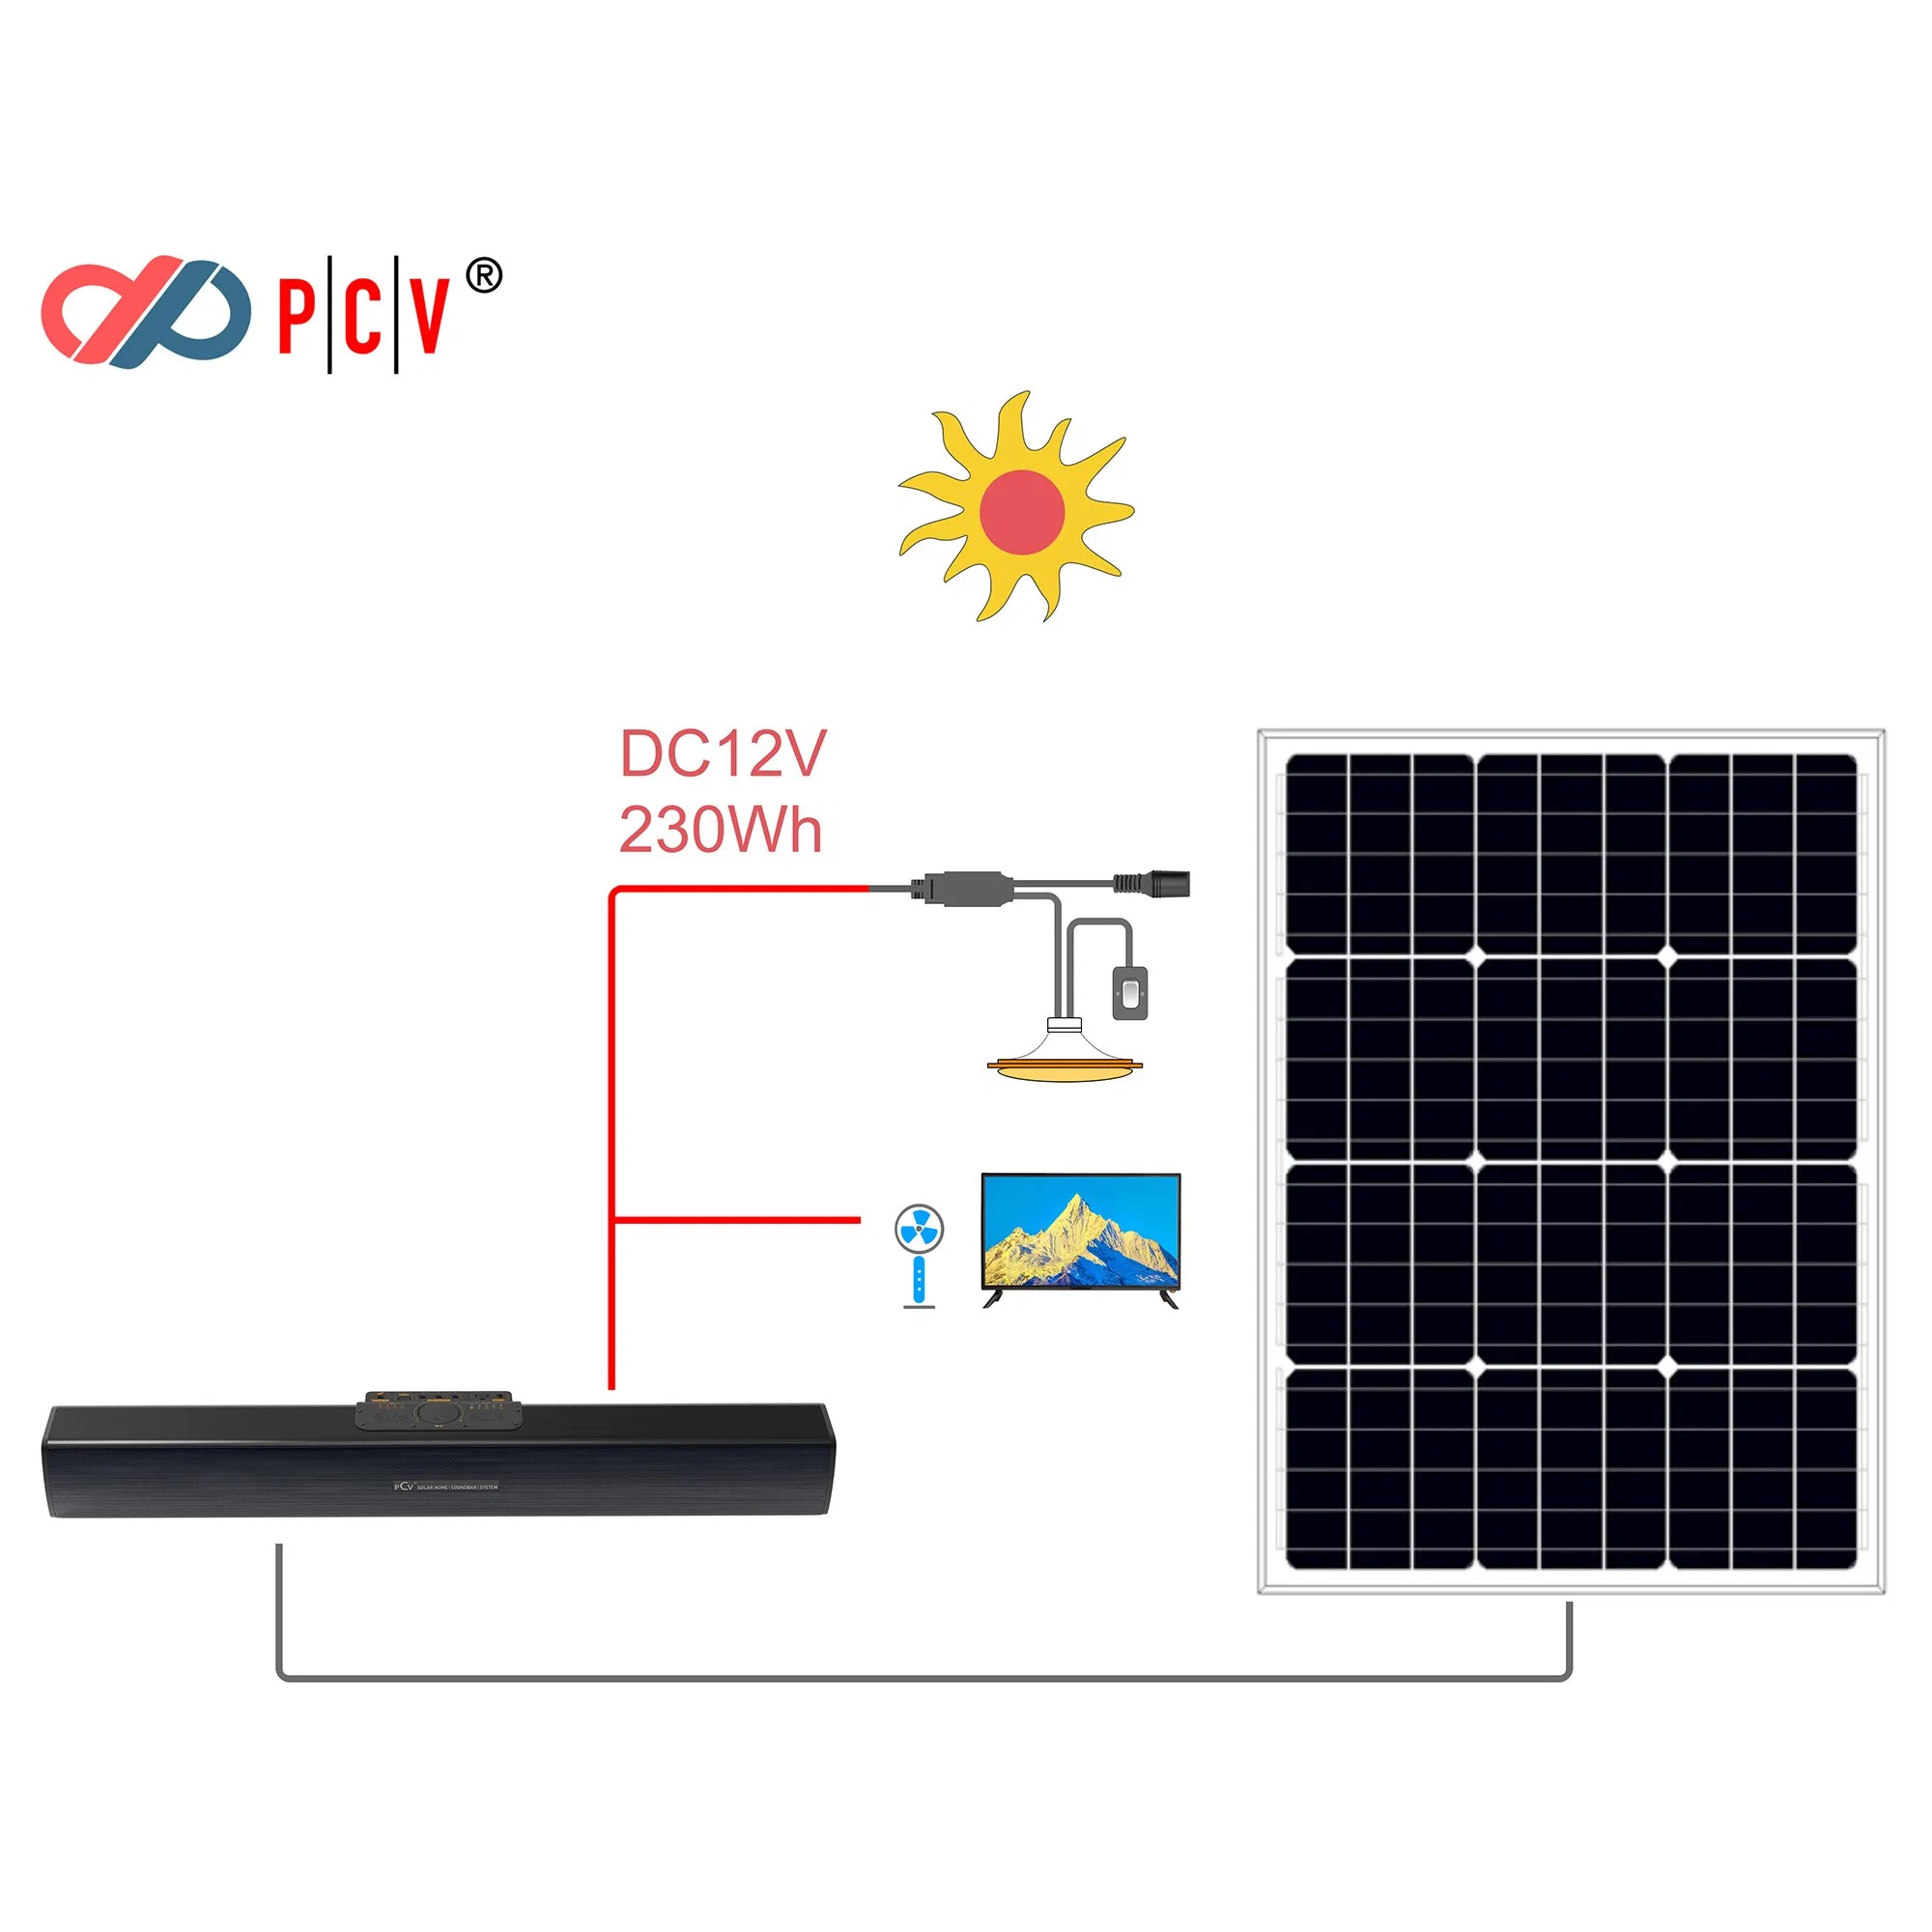 Pcv солнечной системы домашнего кинотеатра солнечных домашних звуковая панель солнечной системы освещения + DC портативный телевизор для использования вне помещений